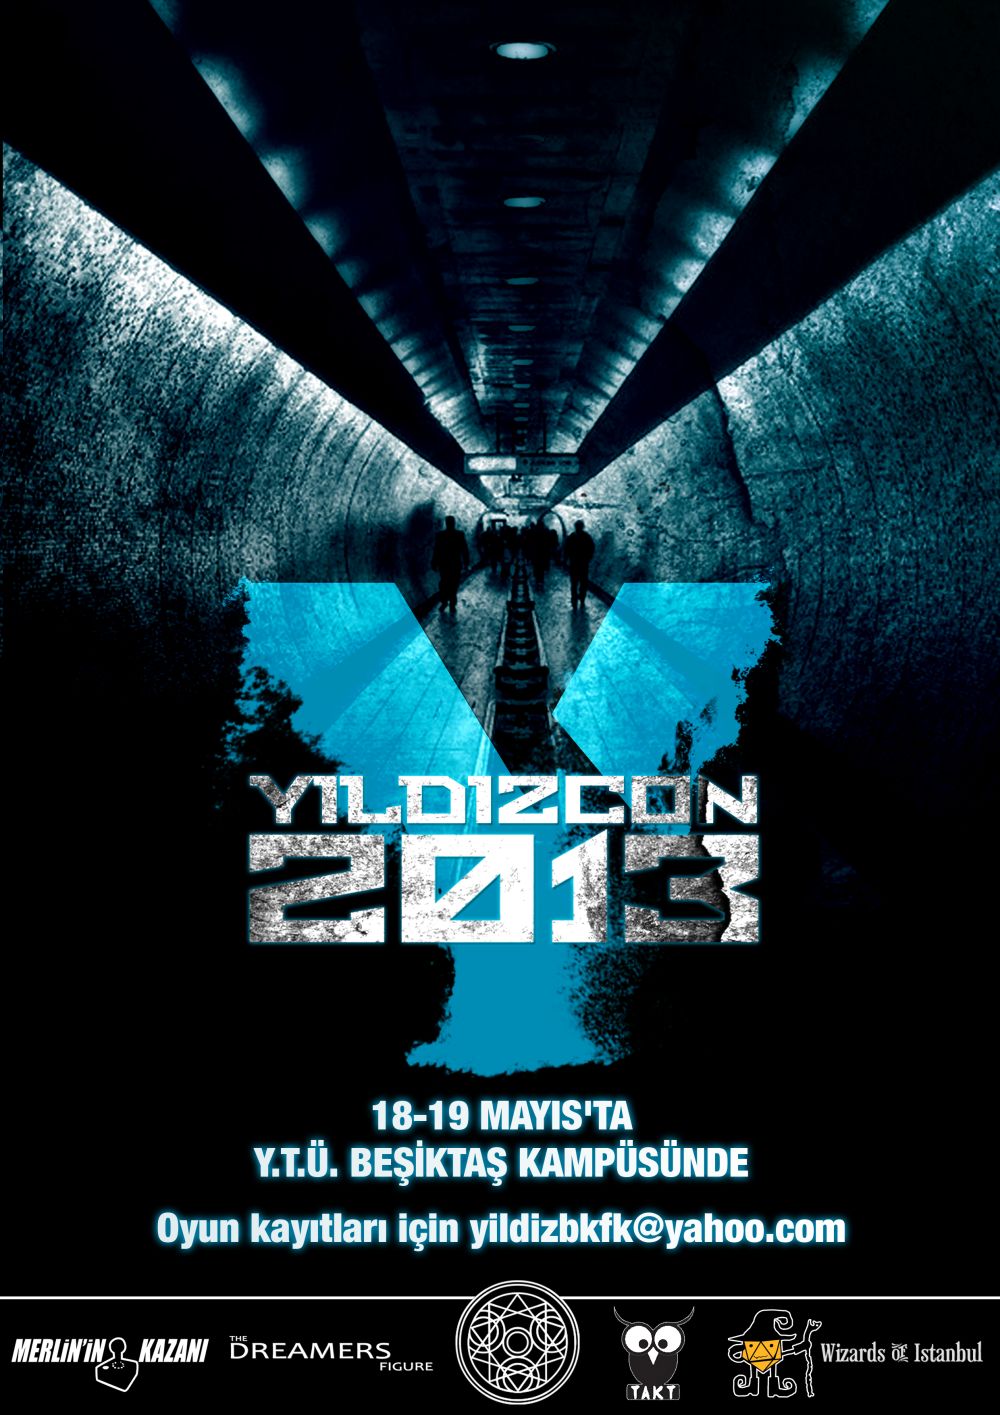 YıldızCON 2013 geliyor!